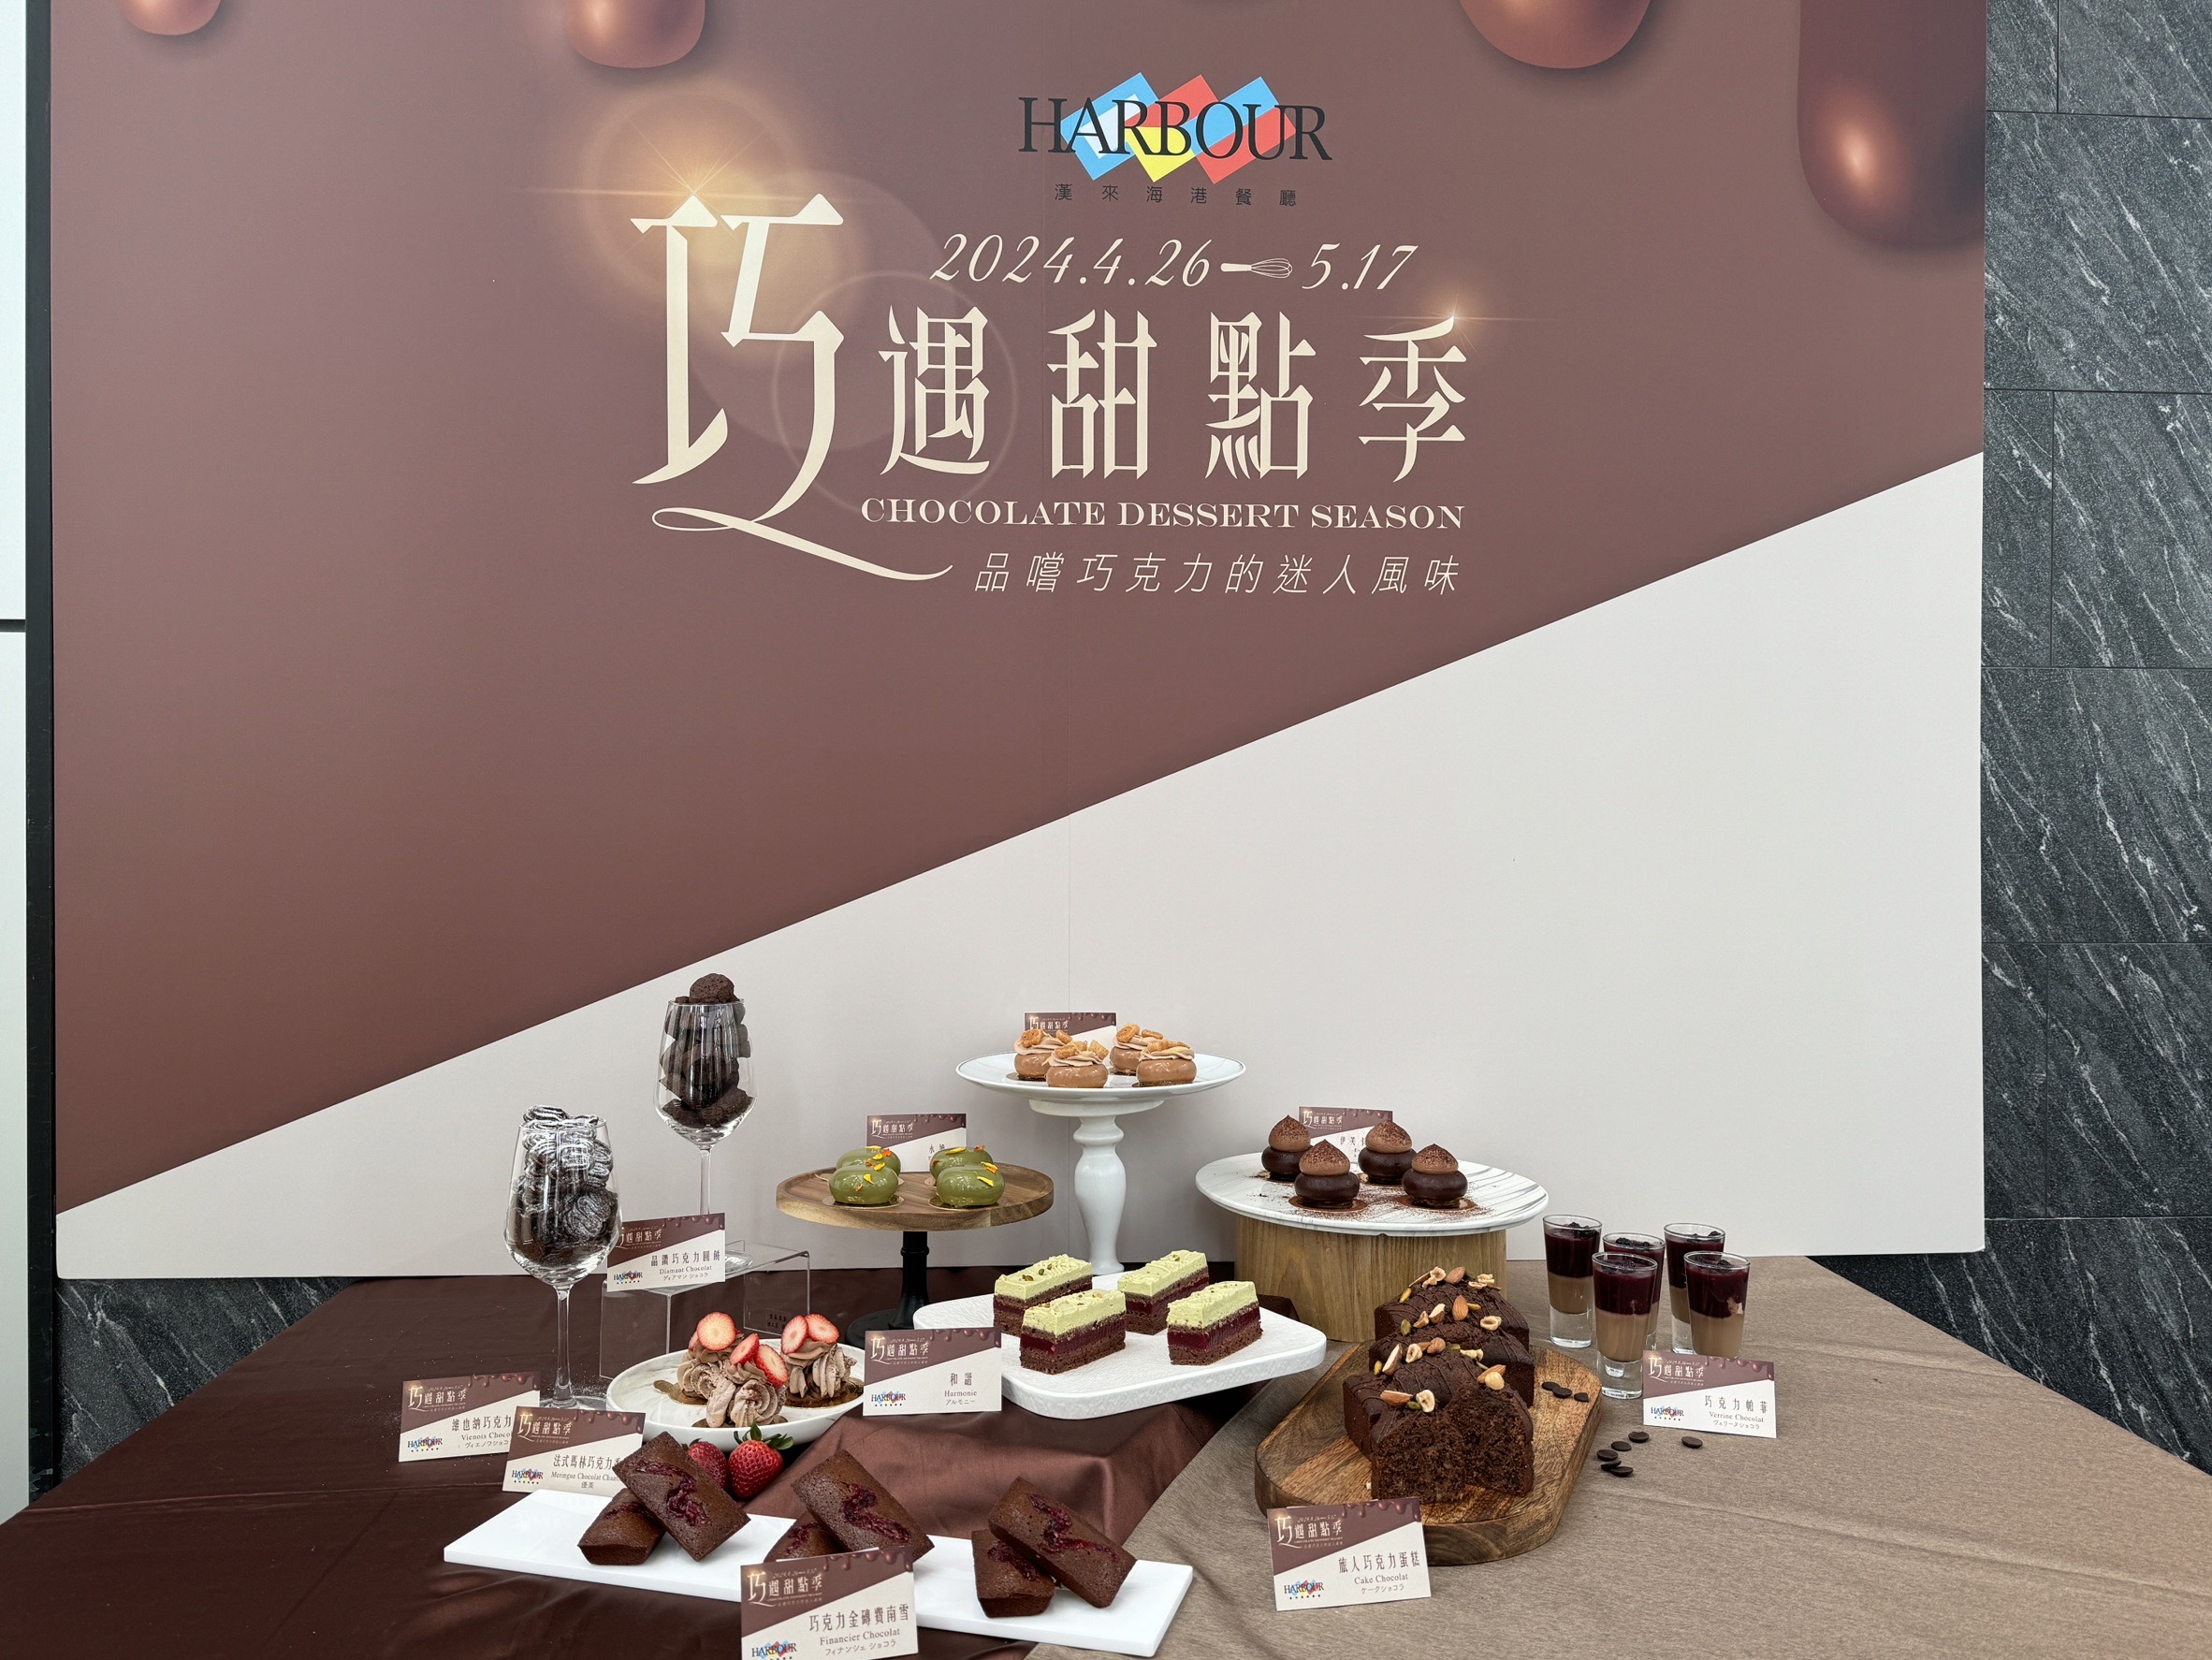 汉来美食推出「巧遇甜点季」，邀请日本米其林星级主厨昆布智成来台客座。记者林海／摄影